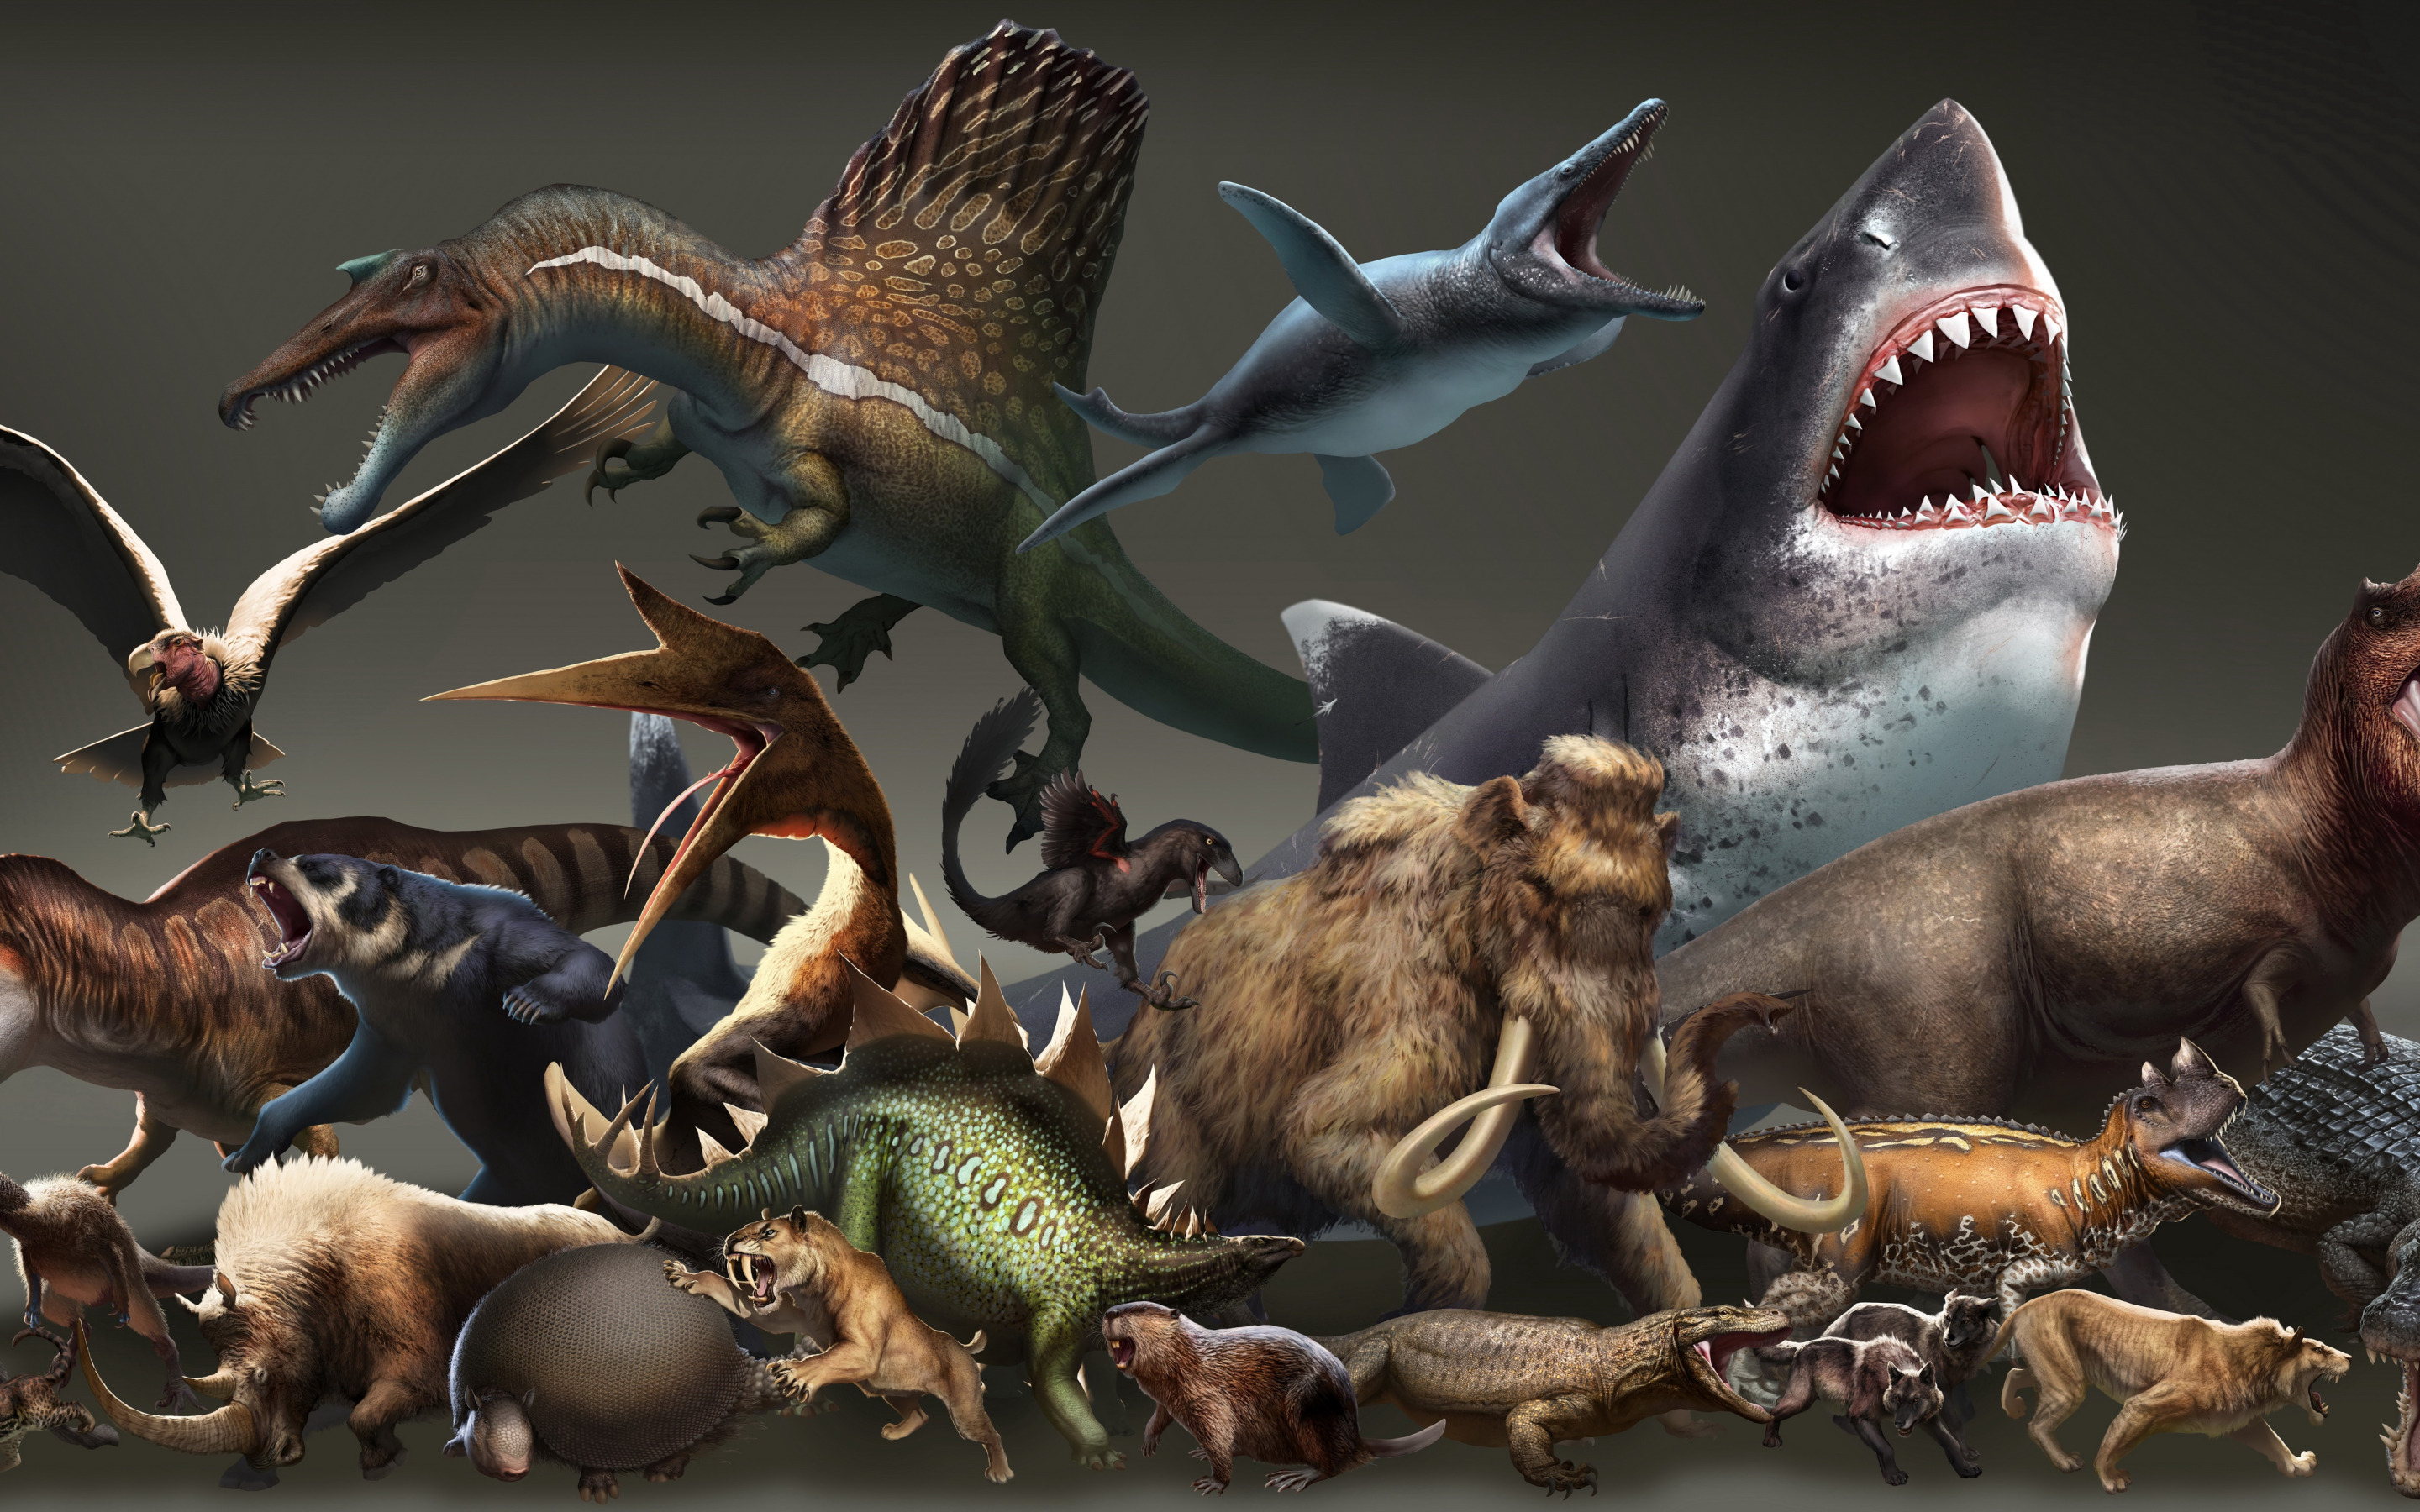 Dinosaur battle. Палеоарт парк Юрского периода. Плотоядные динозавры Юрского периода. ДЕАГОСТИНИ морские динозавры. Дейнозух против МЕГАЛОДОНА.